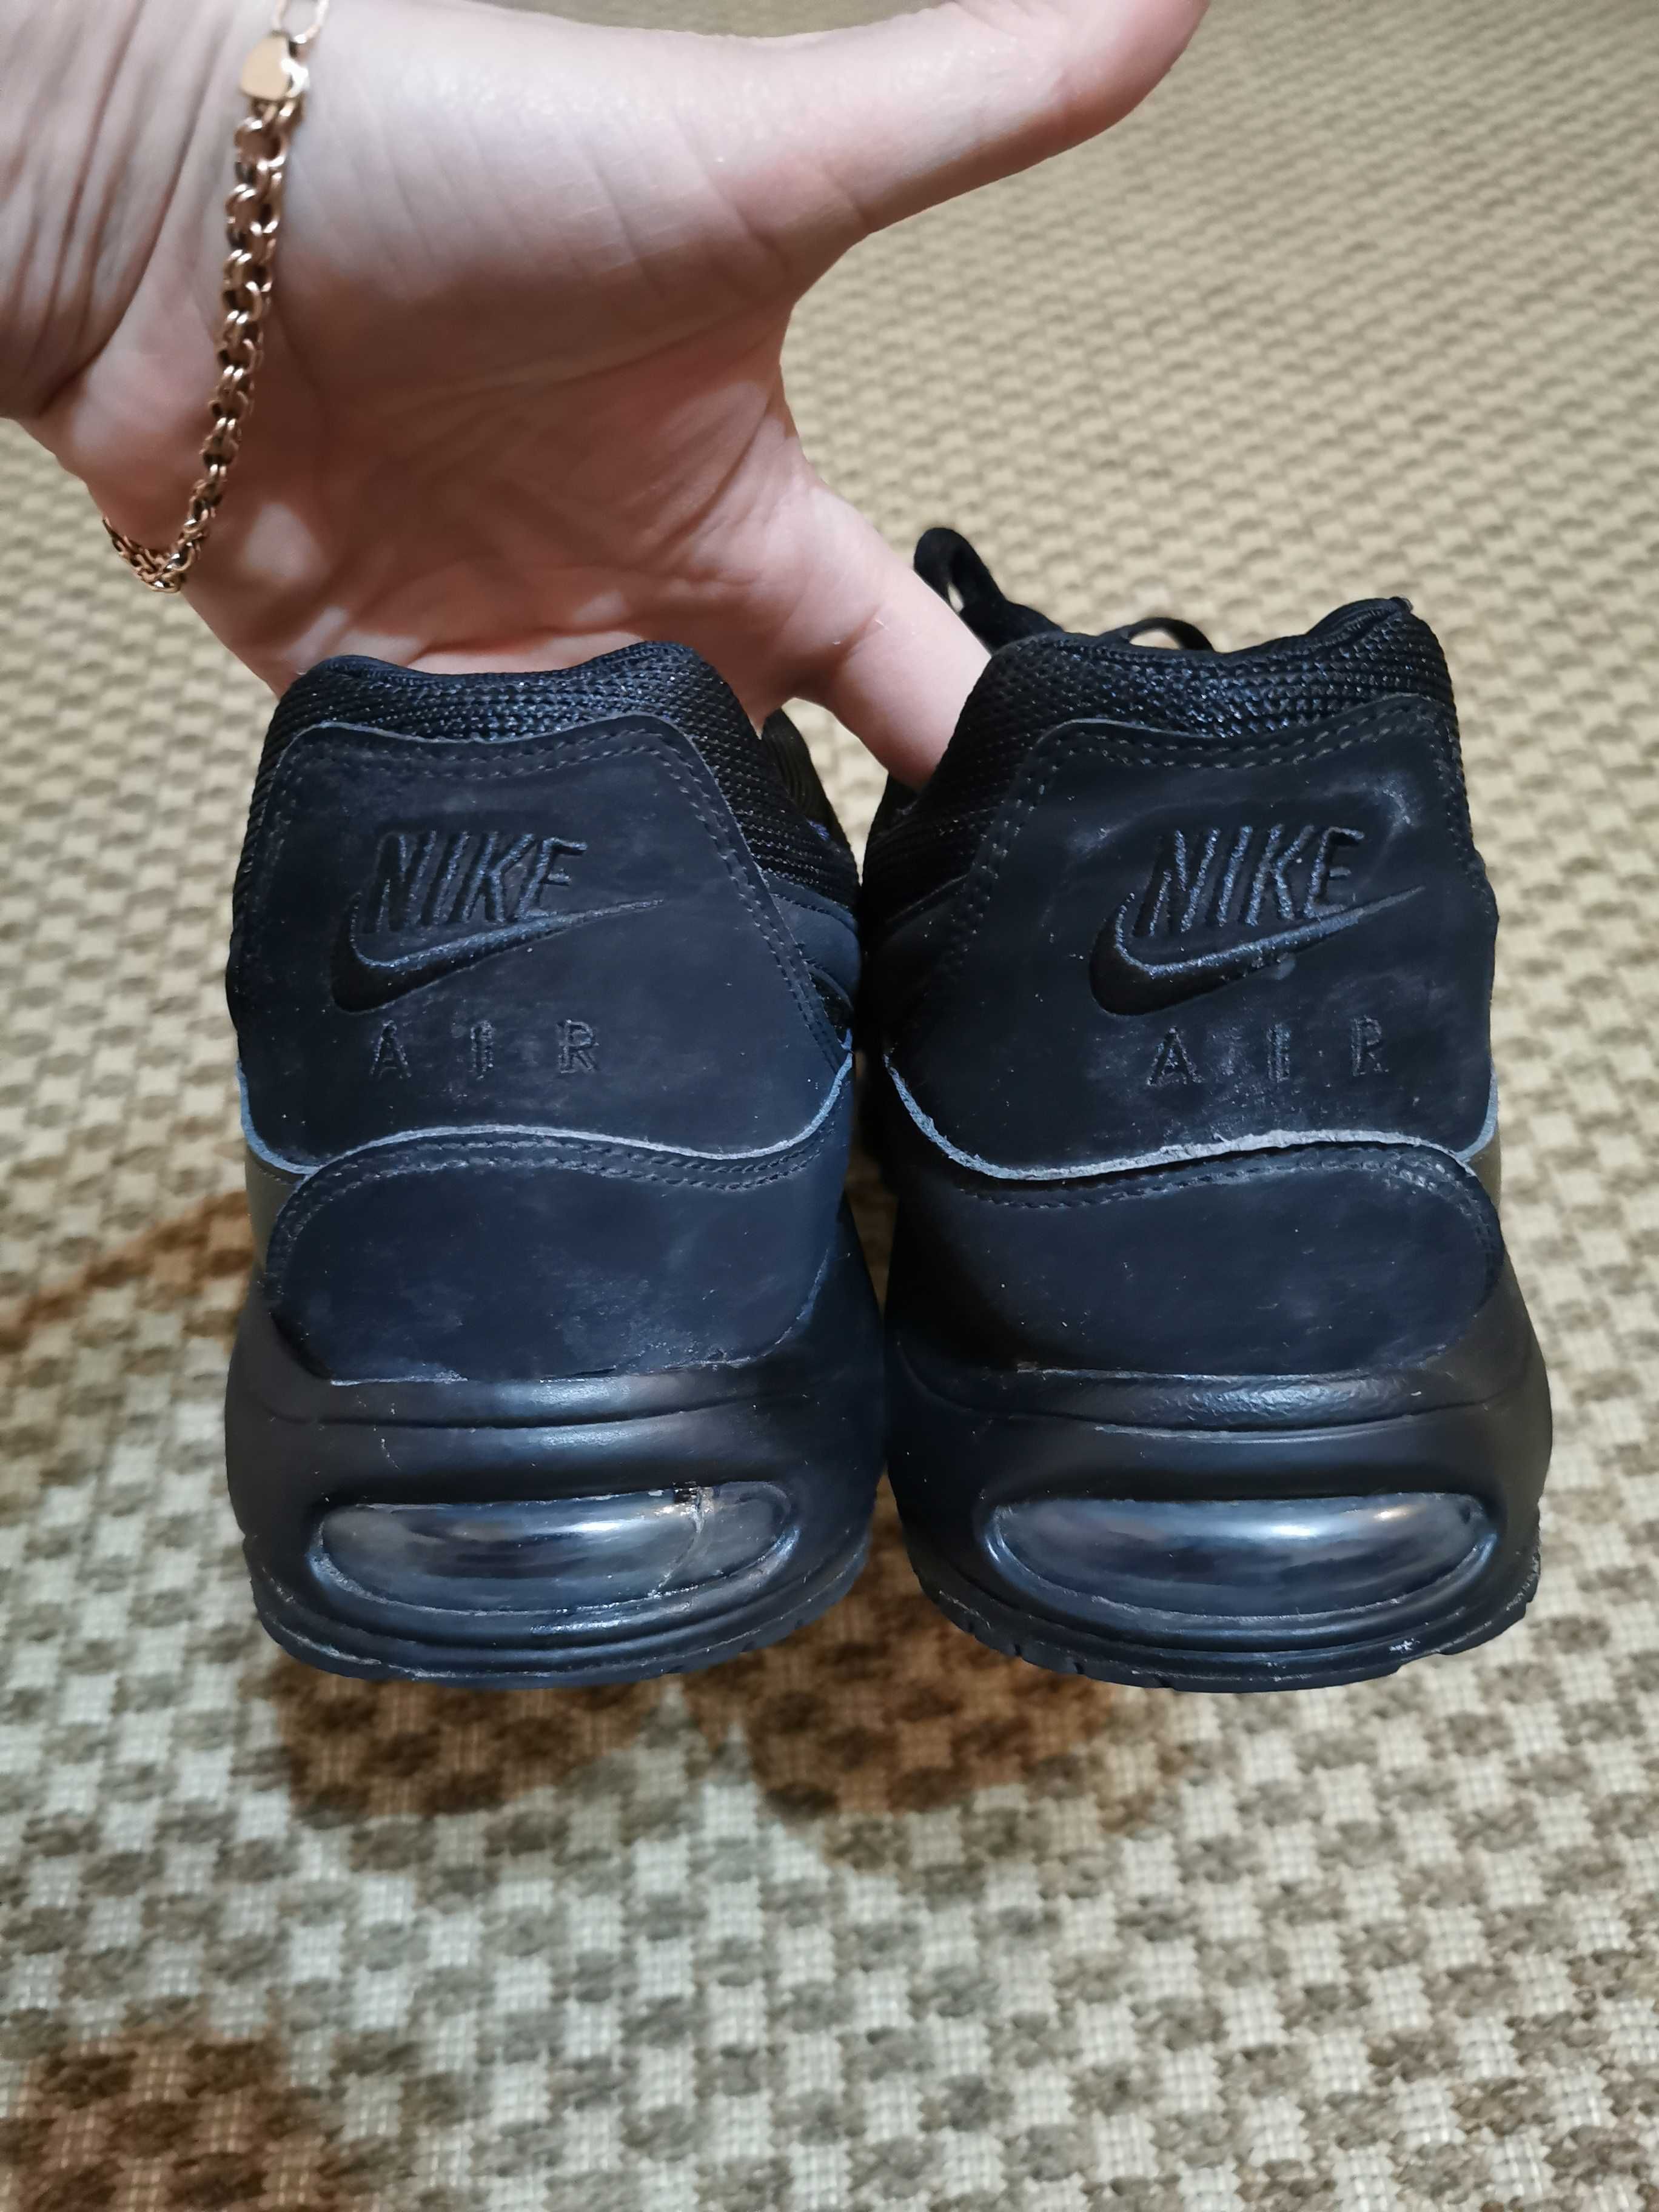 Мужские кроссовки Nike Air max 629993-020, 46 размер. Оригинал.